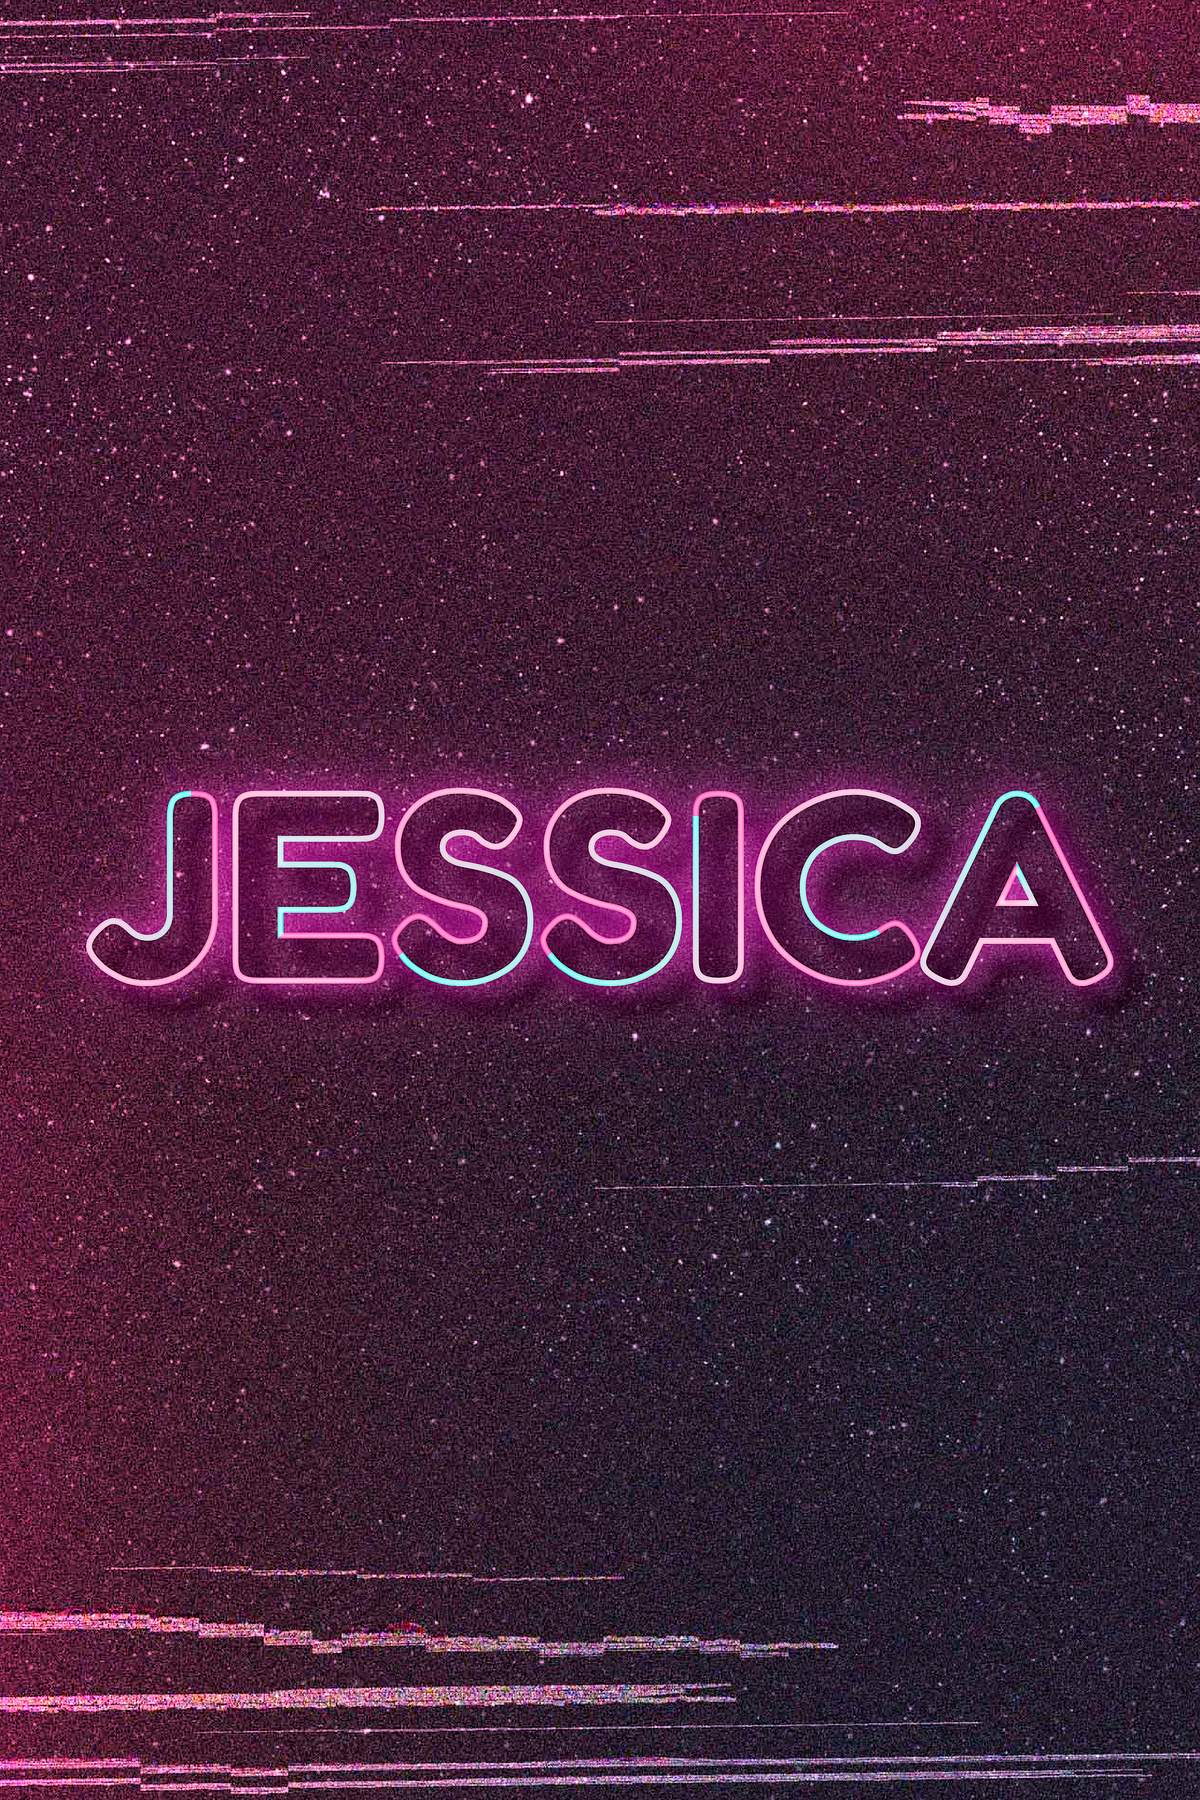 Jessica Word Art Vector Neon Typography